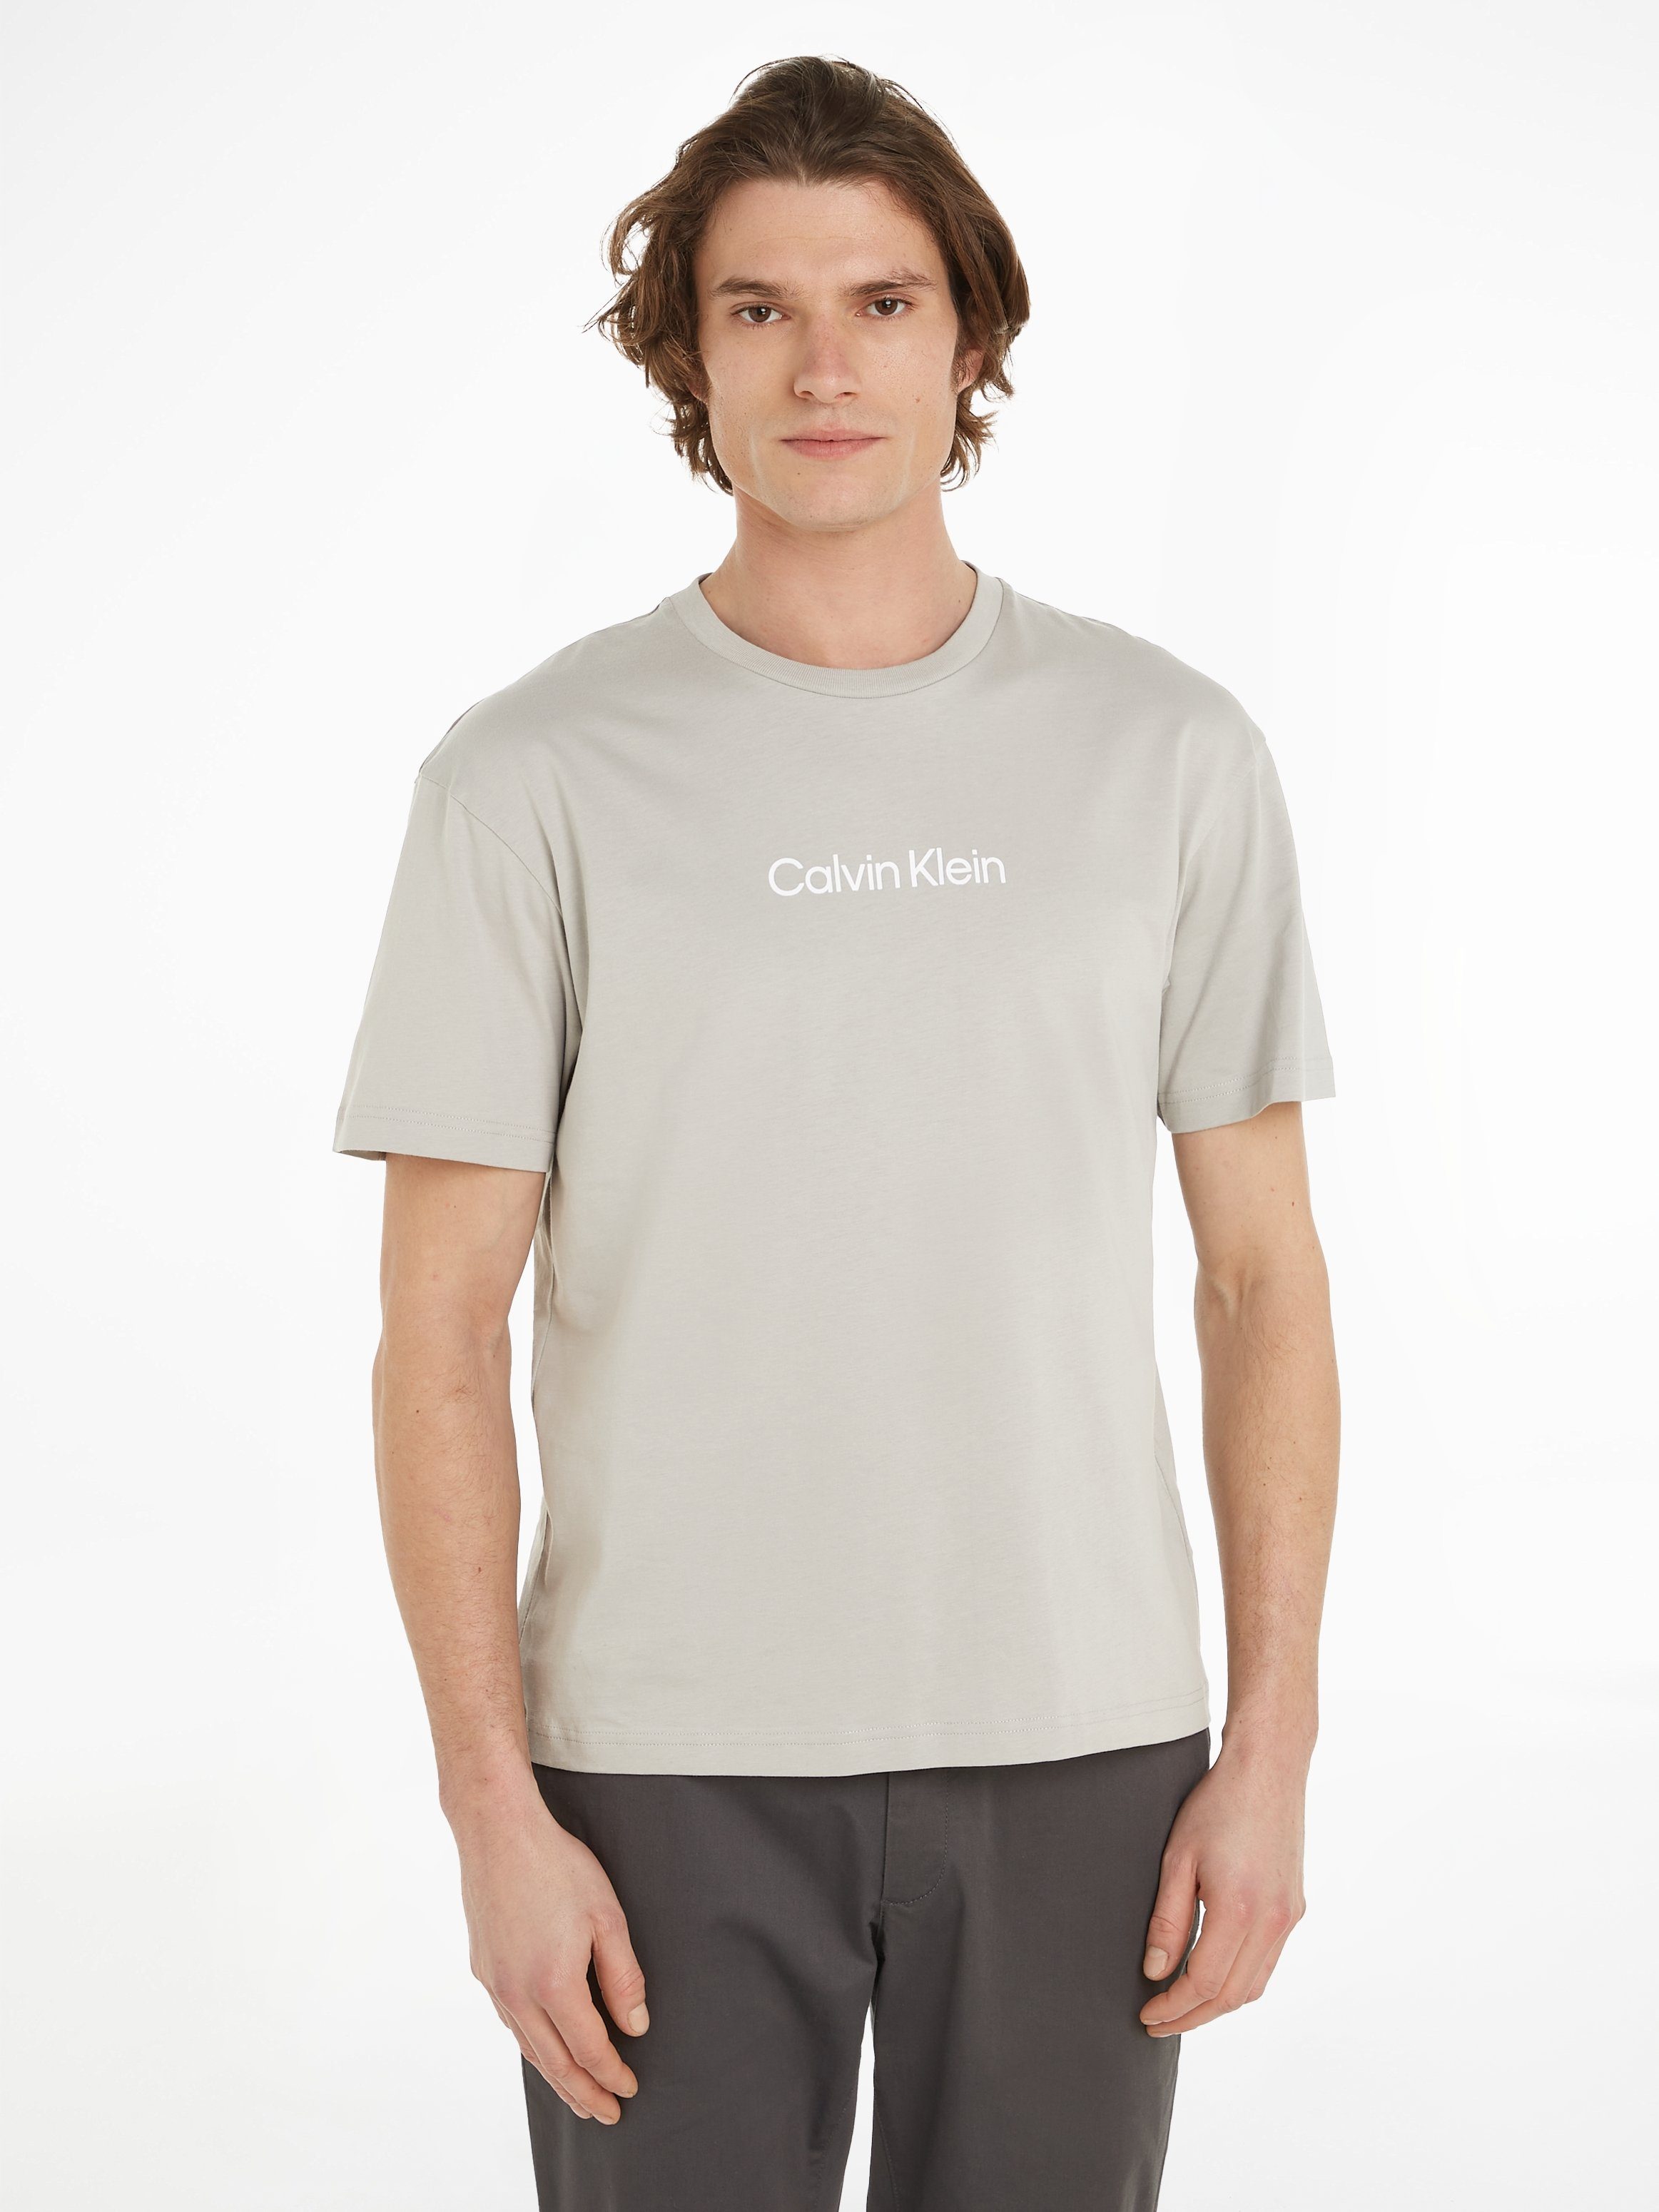 Calvin Klein T-Shirt HERO LOGO COMFORT T-SHIRT mit aufgedrucktem Markenlabel Ghost Gray | T-Shirts